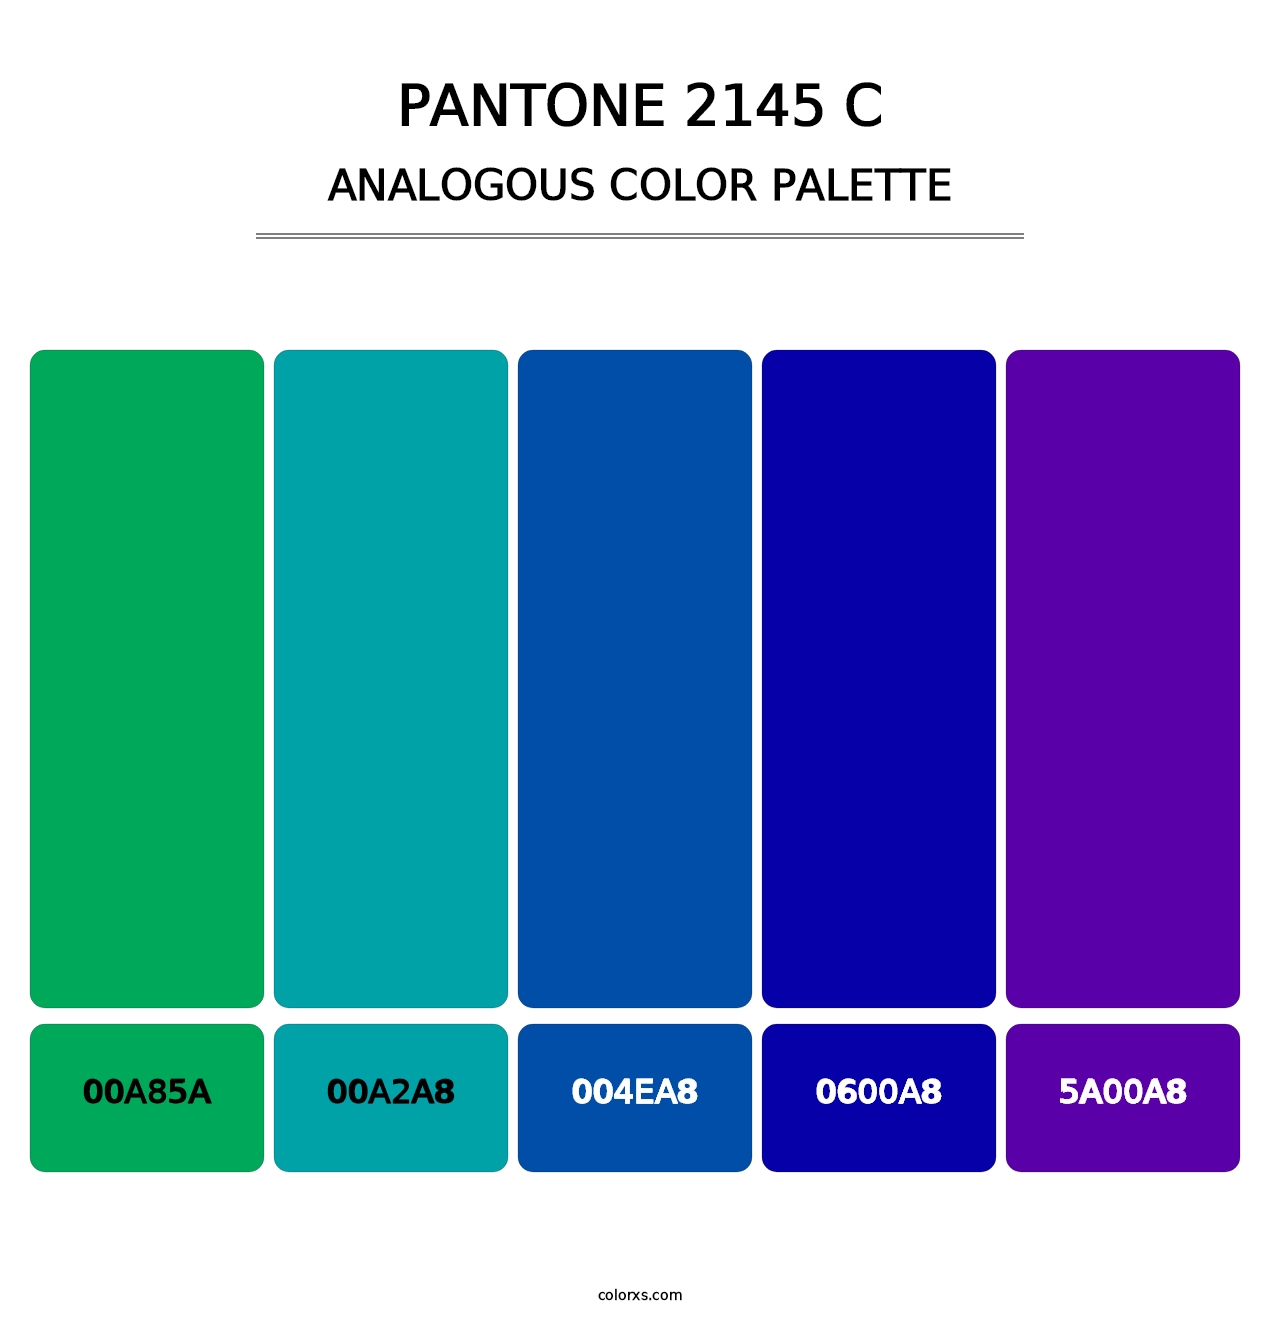 PANTONE 2145 C - Analogous Color Palette